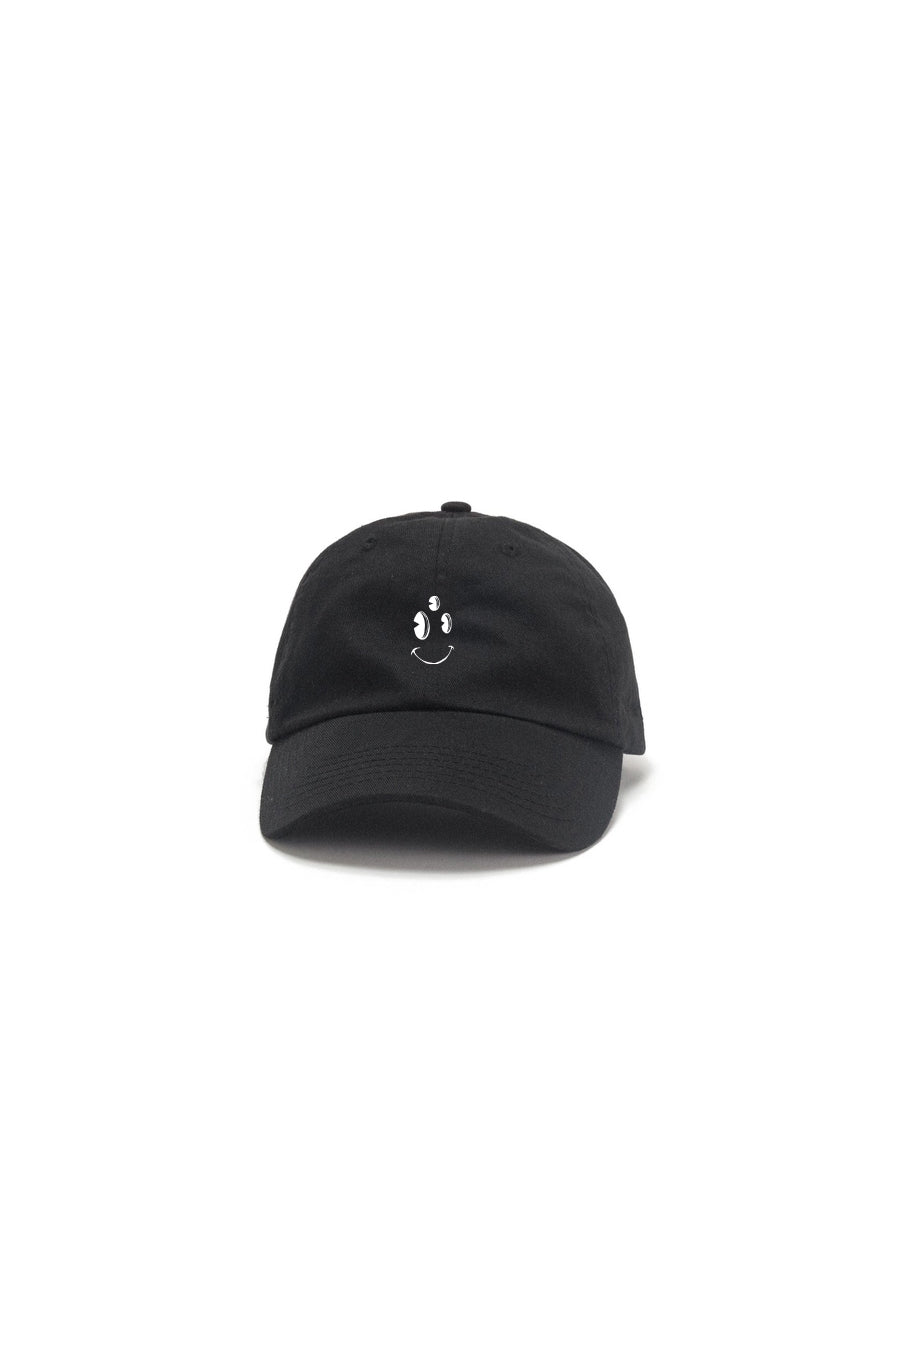 TEC Drop #00 - Black cap